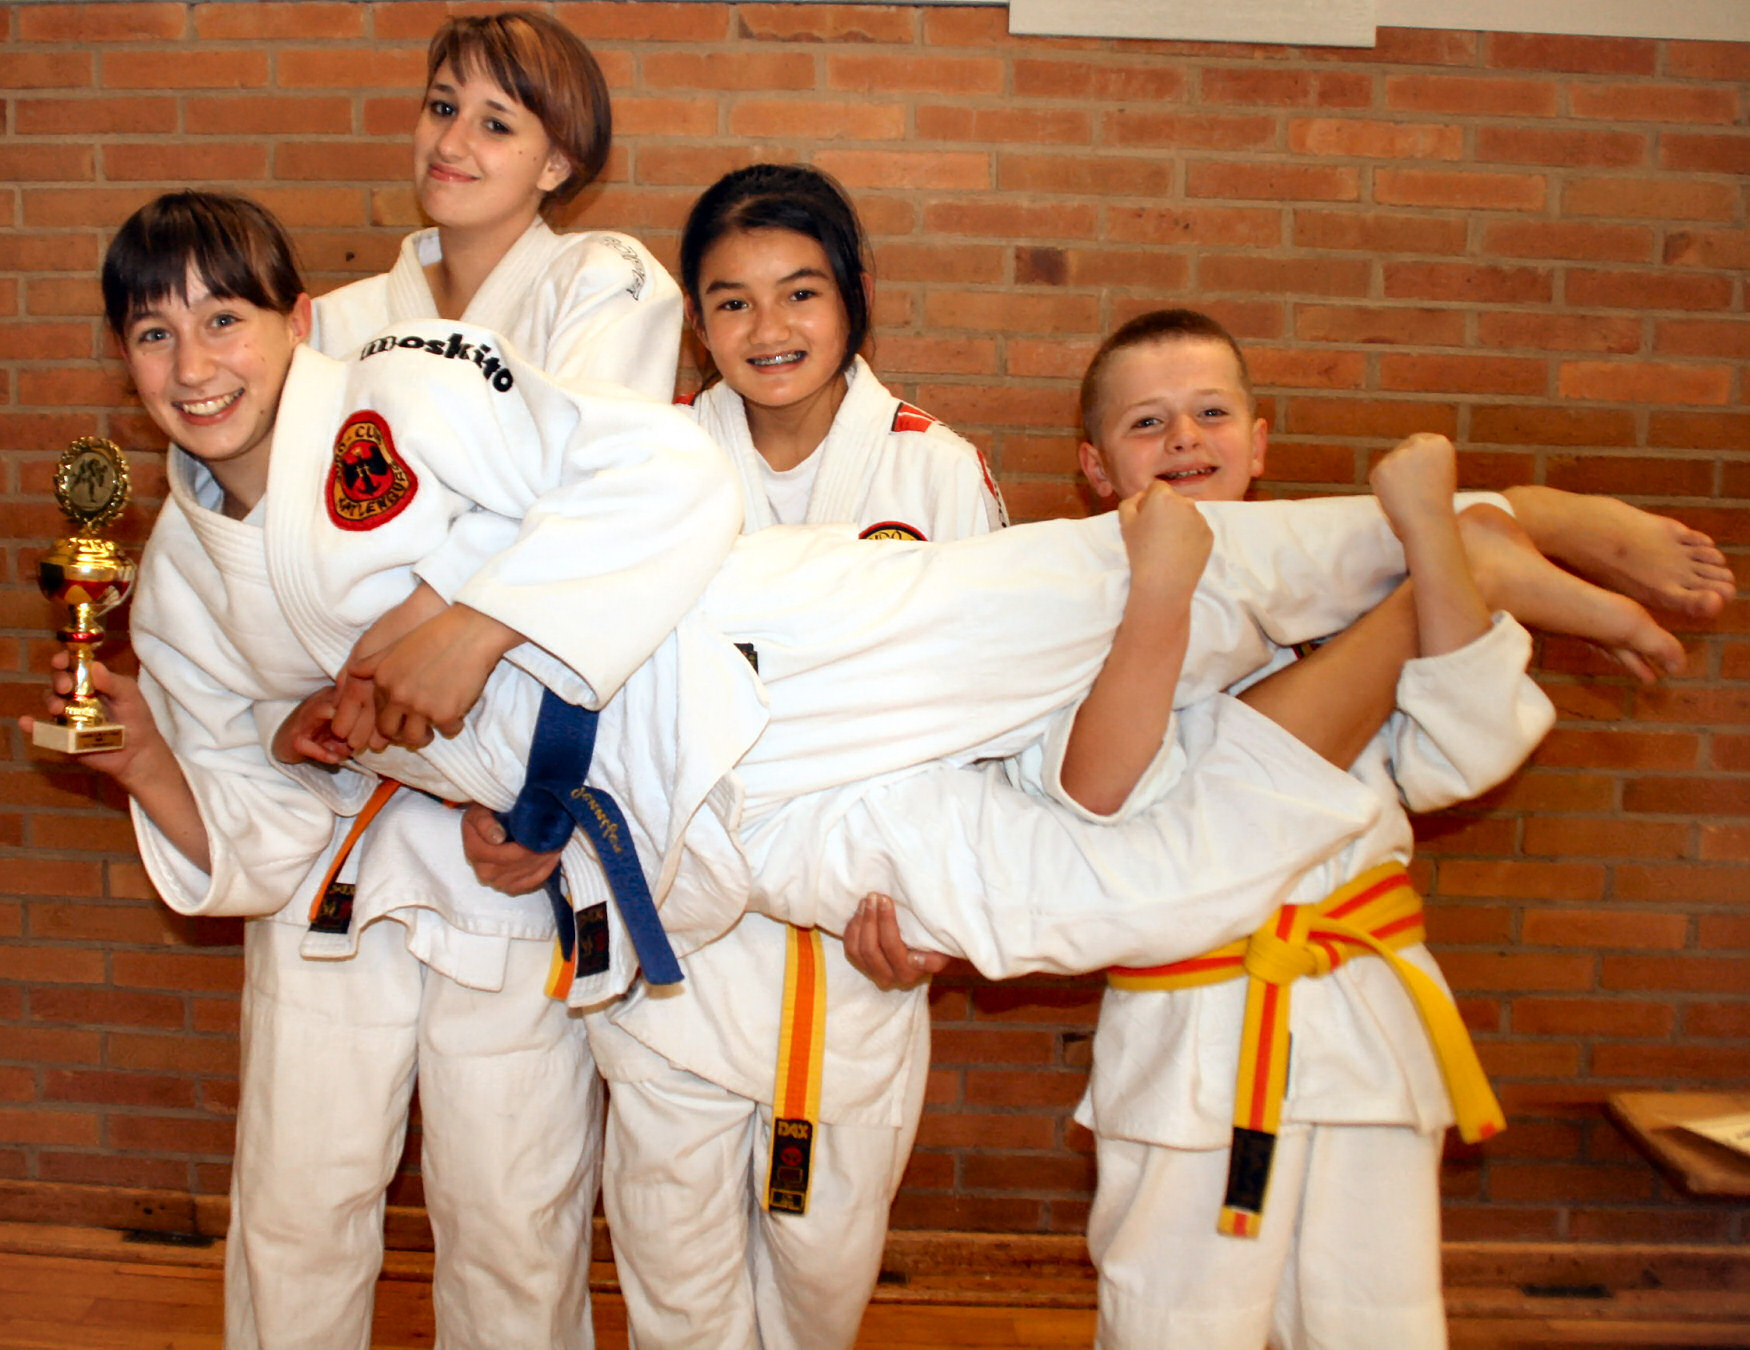 Die Teilnehmer des Judo-Club Katlenburg